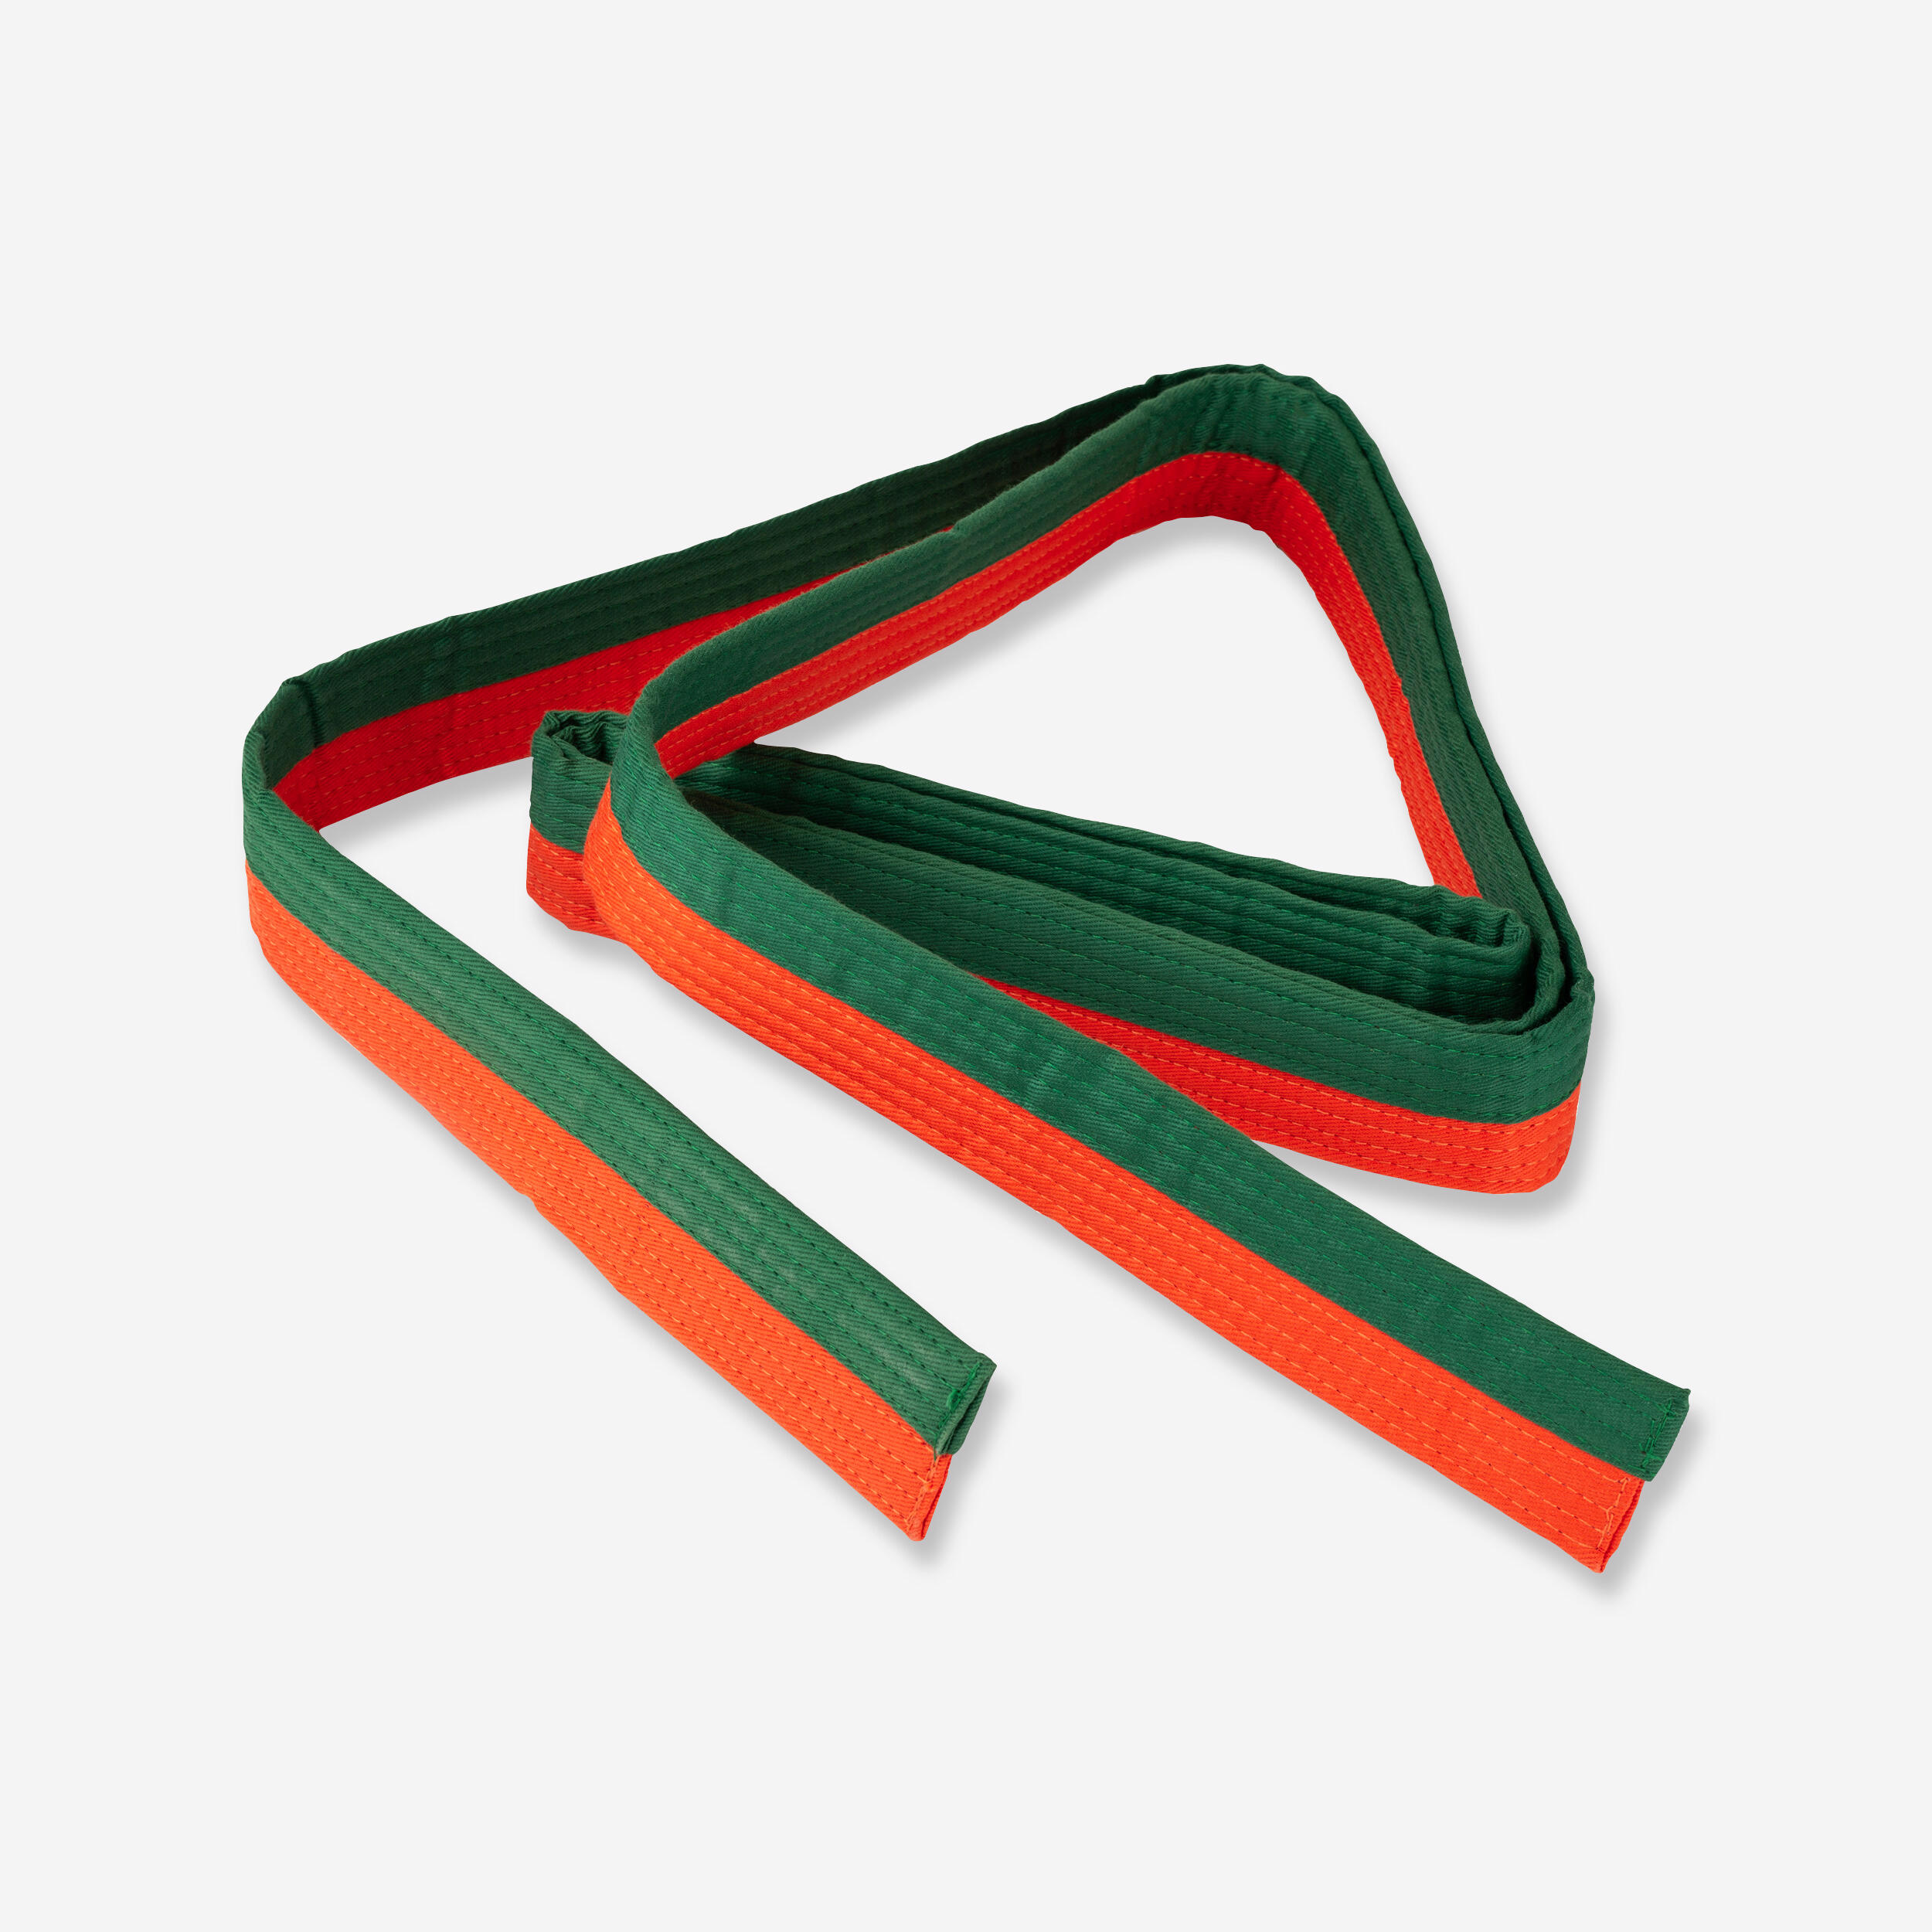 2.5m Piqué Belt - Orange/Green 1/3